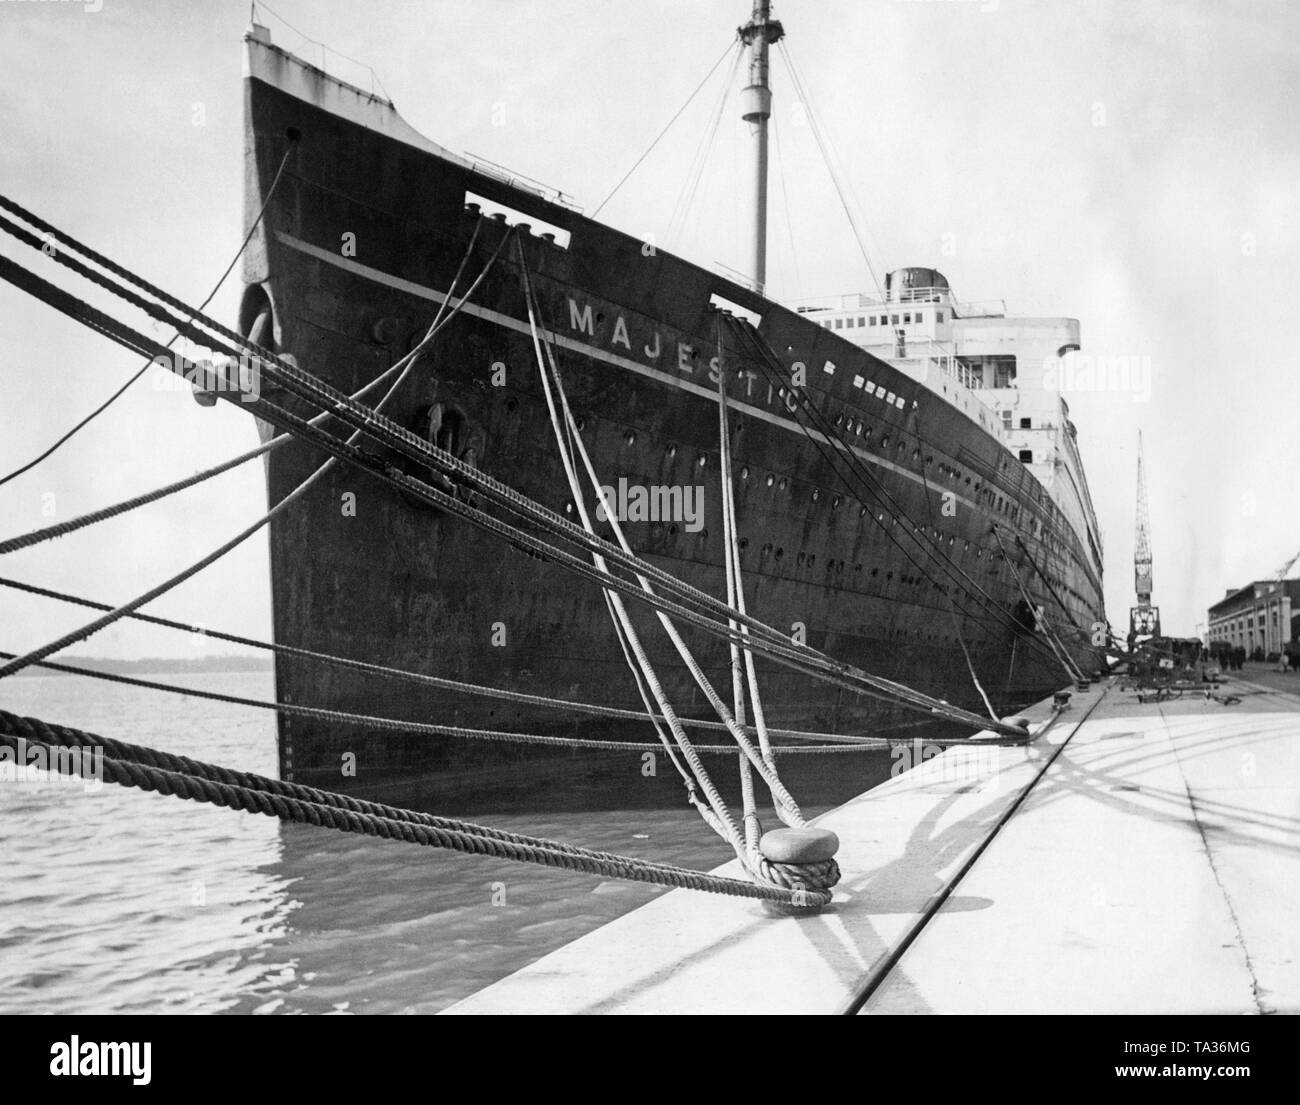 La 'Majestic' RMS de la White Star Line au quai dans le port de Southampton avec les mâts et les cheminées raccourcies juste avant d'être renommé en 'Caledonia'. Banque D'Images